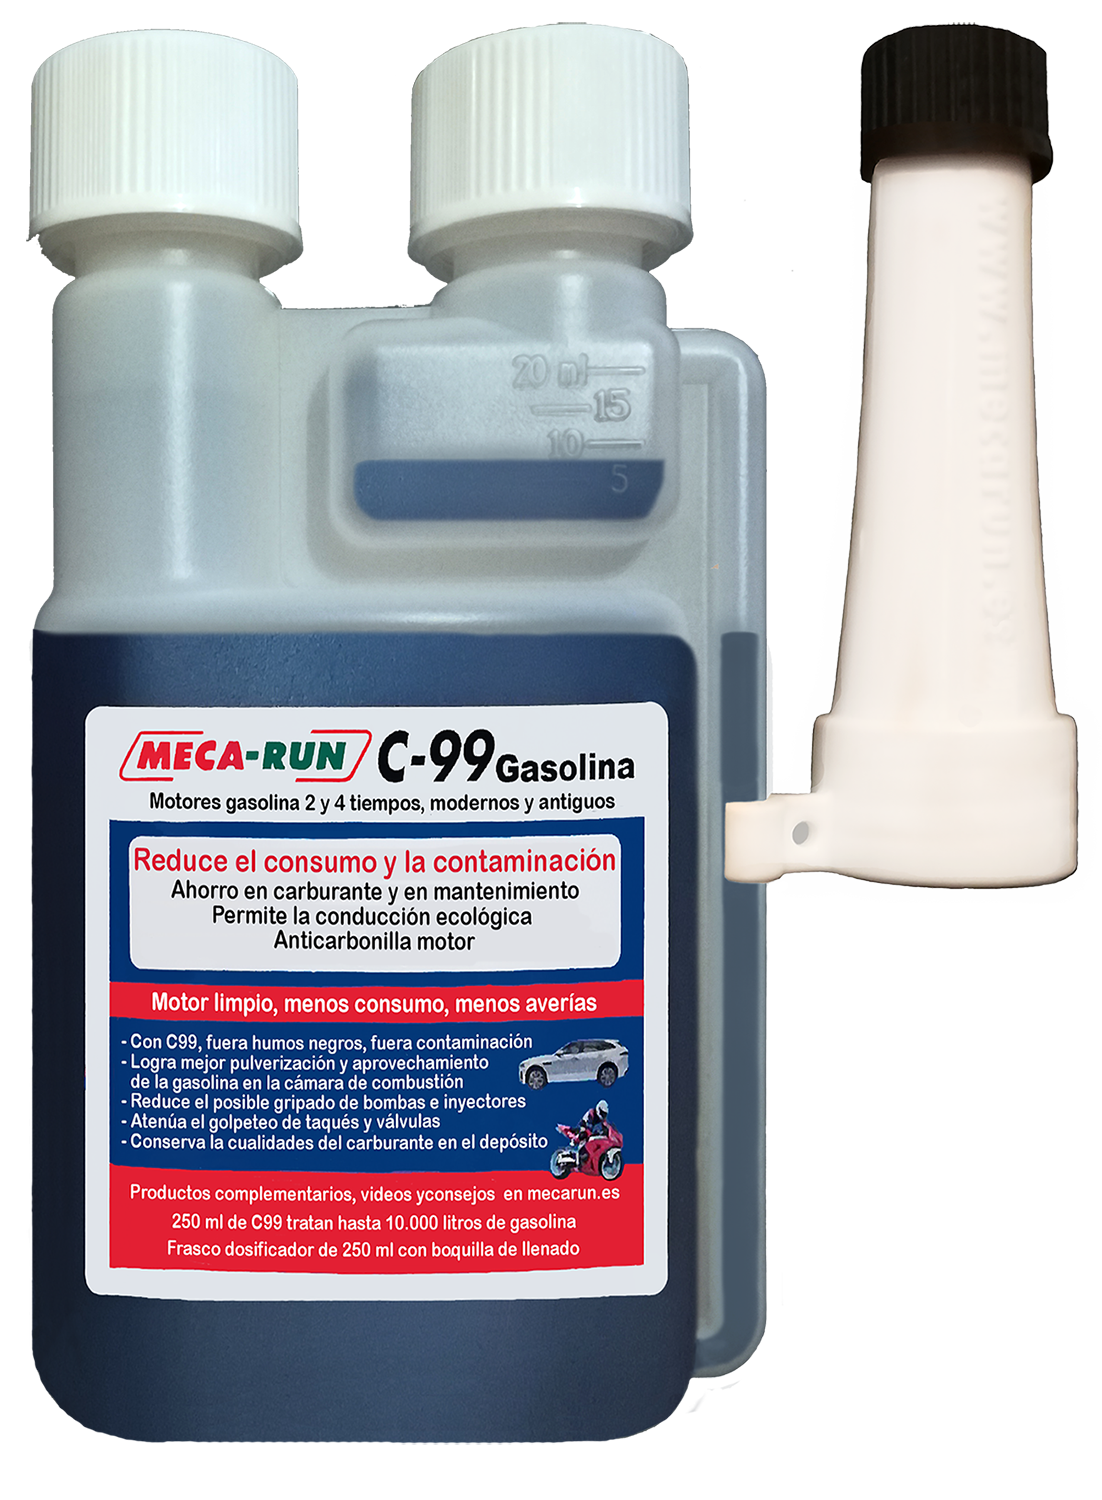 Aditivo Adblue con dosificador para el tratamiento de gases TOTAL, 5 litros